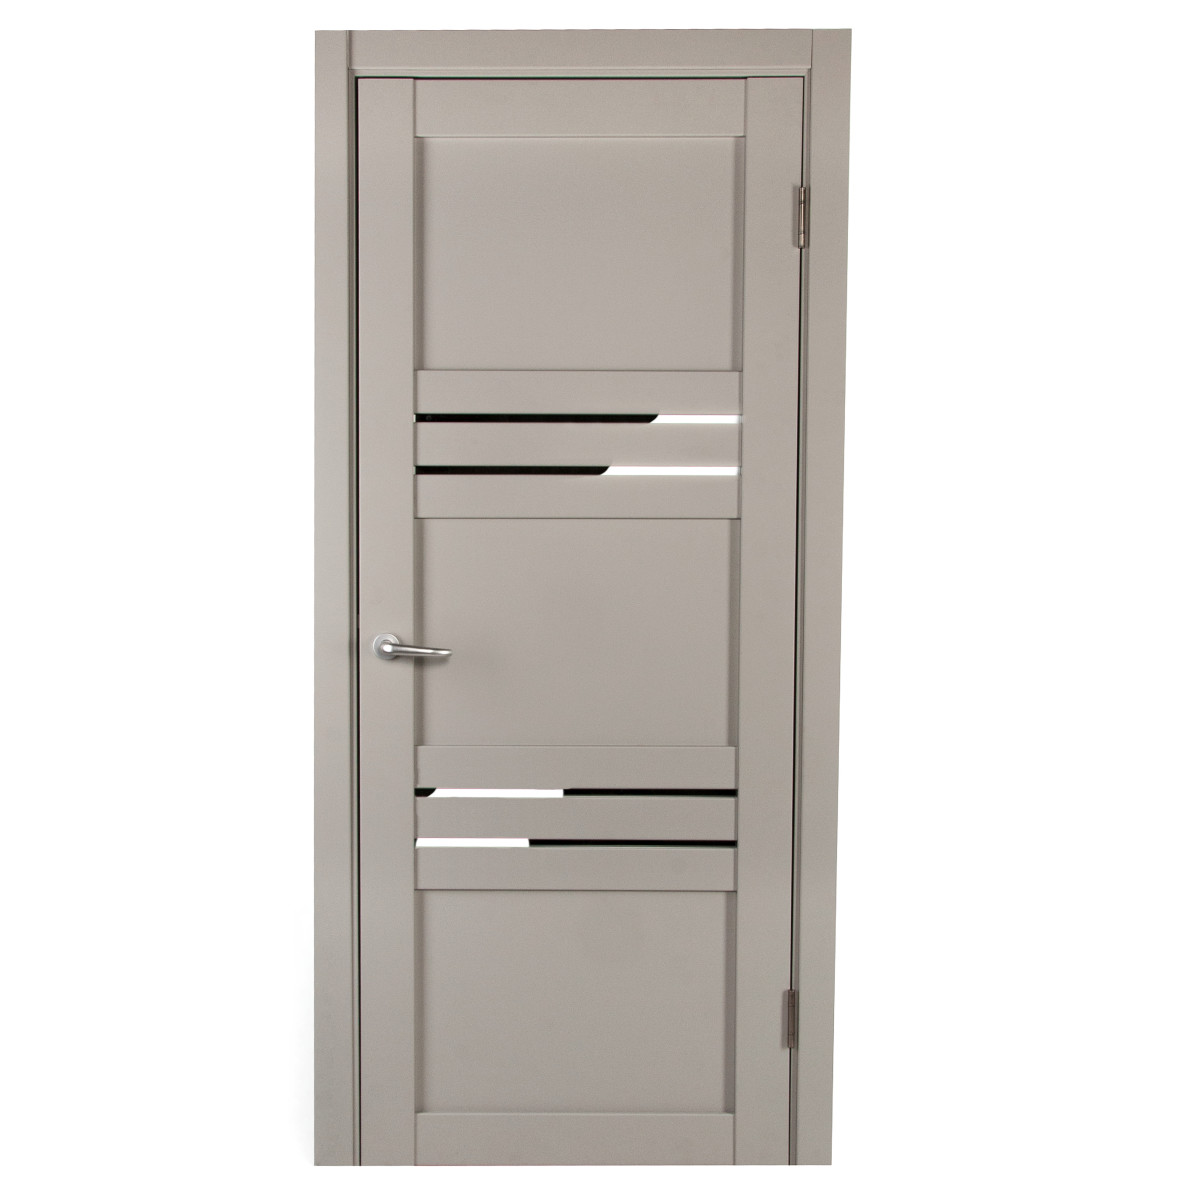 Дверь межкомнатная с фурнитурой Астерия 70х200 см, Hardflex, цвет серый жемчуг